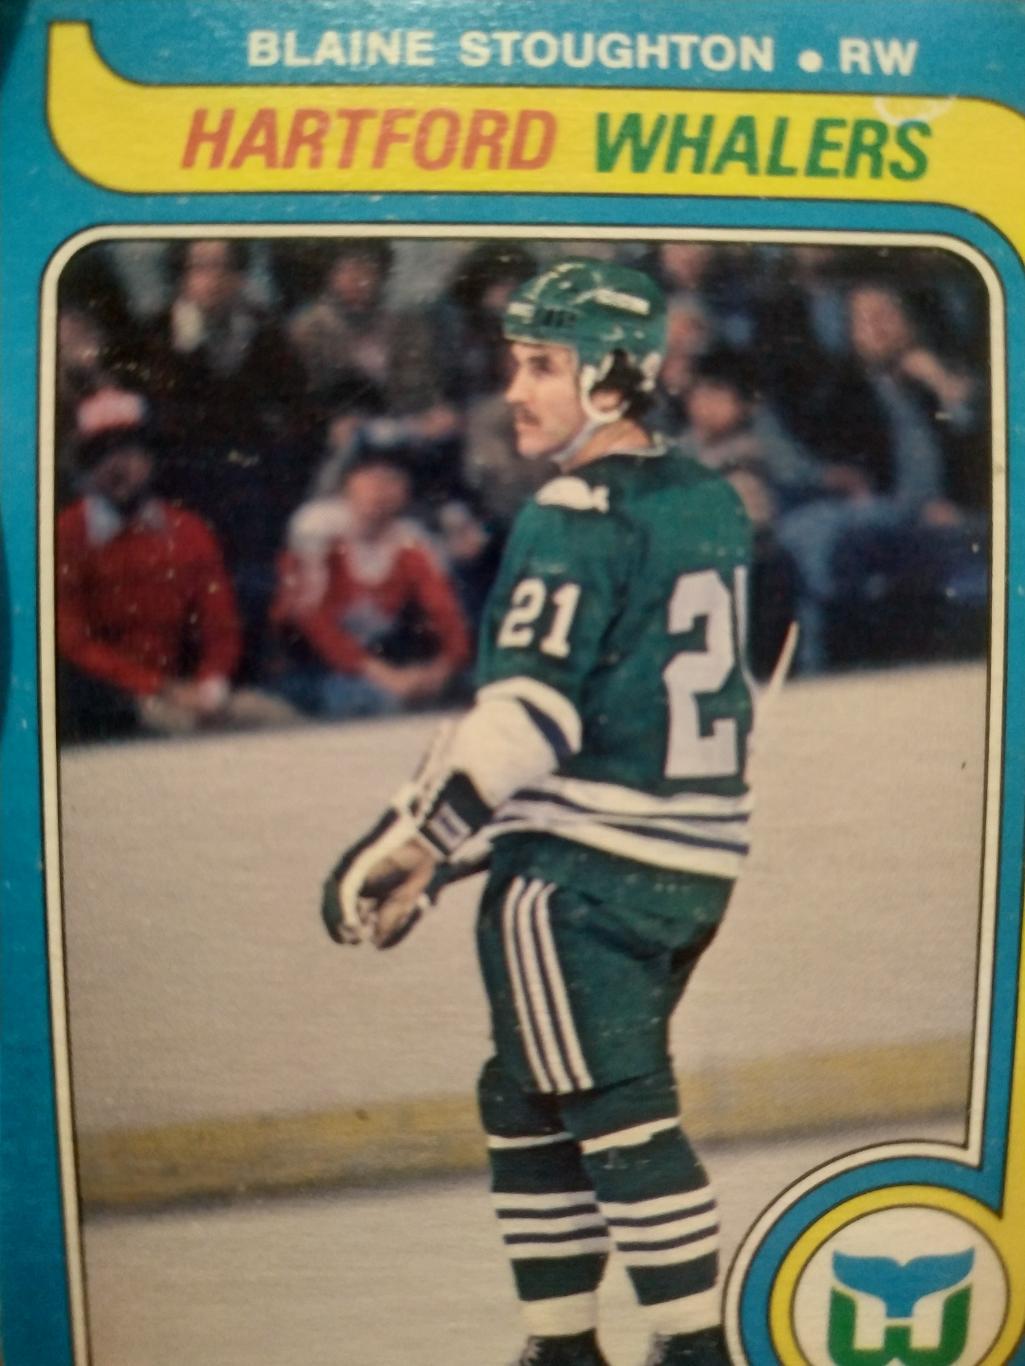 ХОККЕЙ КАРТОЧКА НХЛ O-PEE-CHEE 1979 NHL BLAINE STOUGHTON HARTFORD WHALERS #356